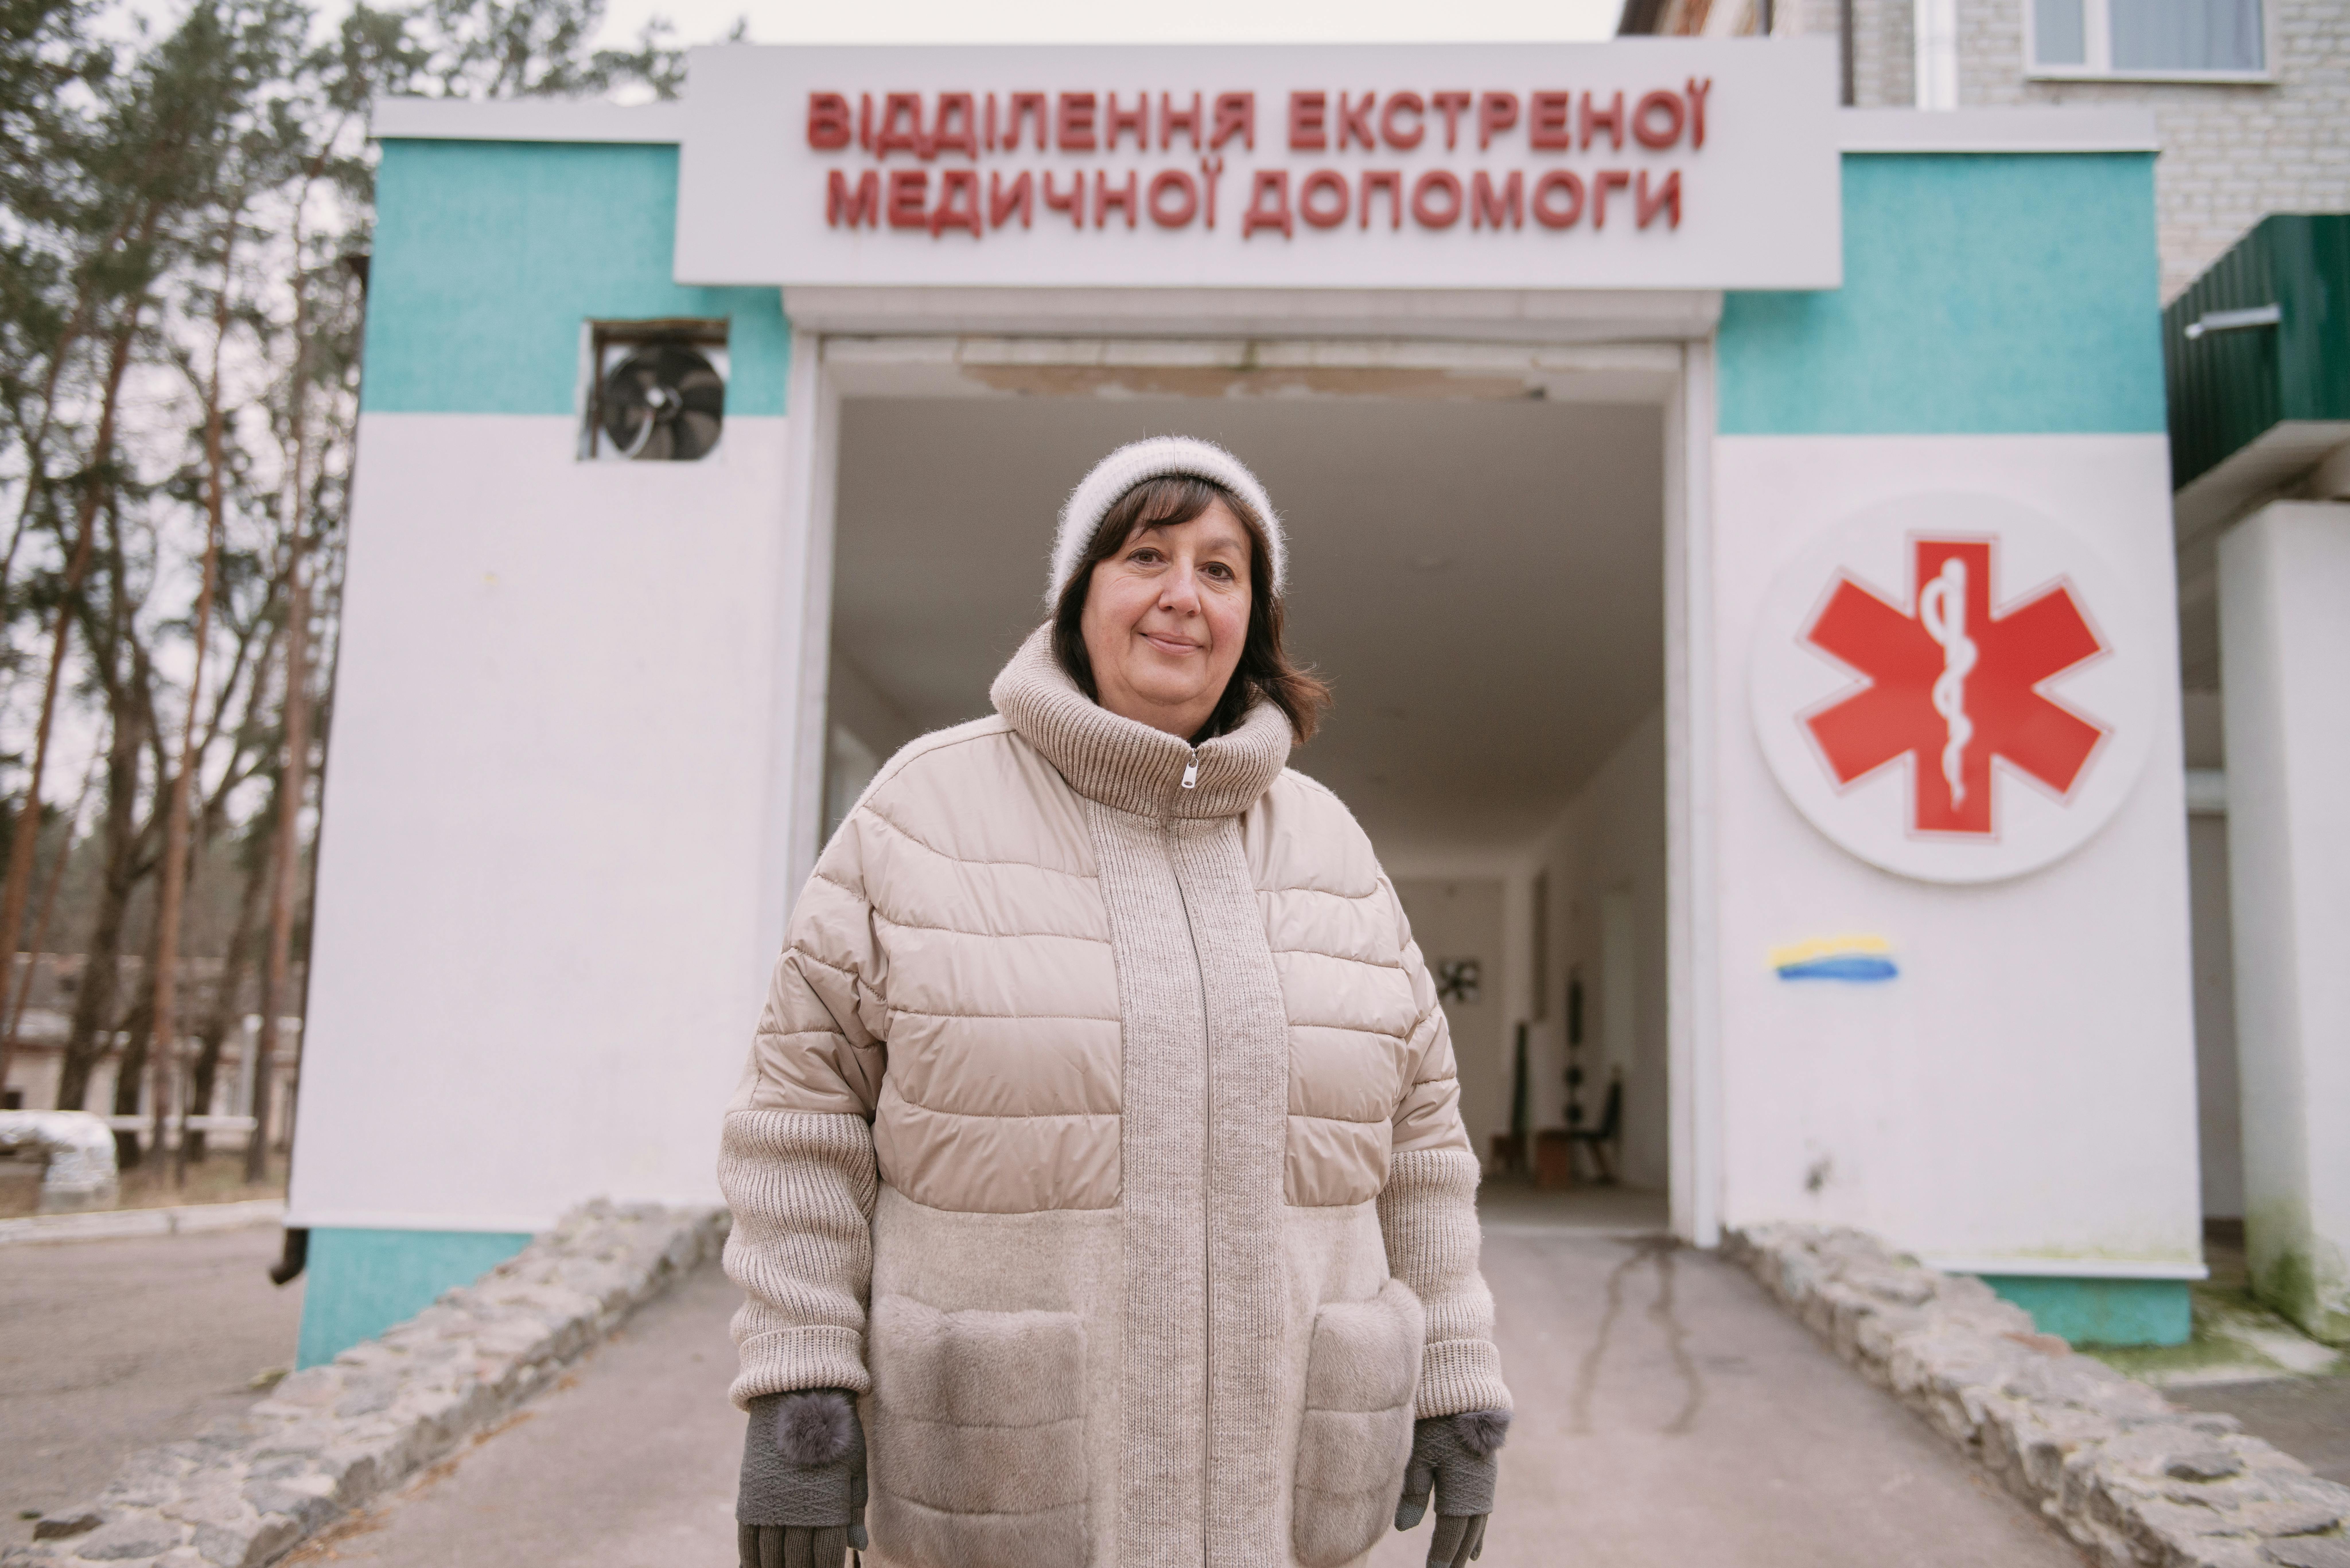 Maryna Rudenko, direttrice dell'ospedale di Balakliya, Ucraina. Per mesi la terapia intensiva è stata chiusa ai pazienti, a causa della guerra. Nel dicembre scorso l'UNICEF ha fornito all'ospedale le attrezzature mediche necessarie per riaprire: finalmente i residenti della zona potranno tornare a curarsi